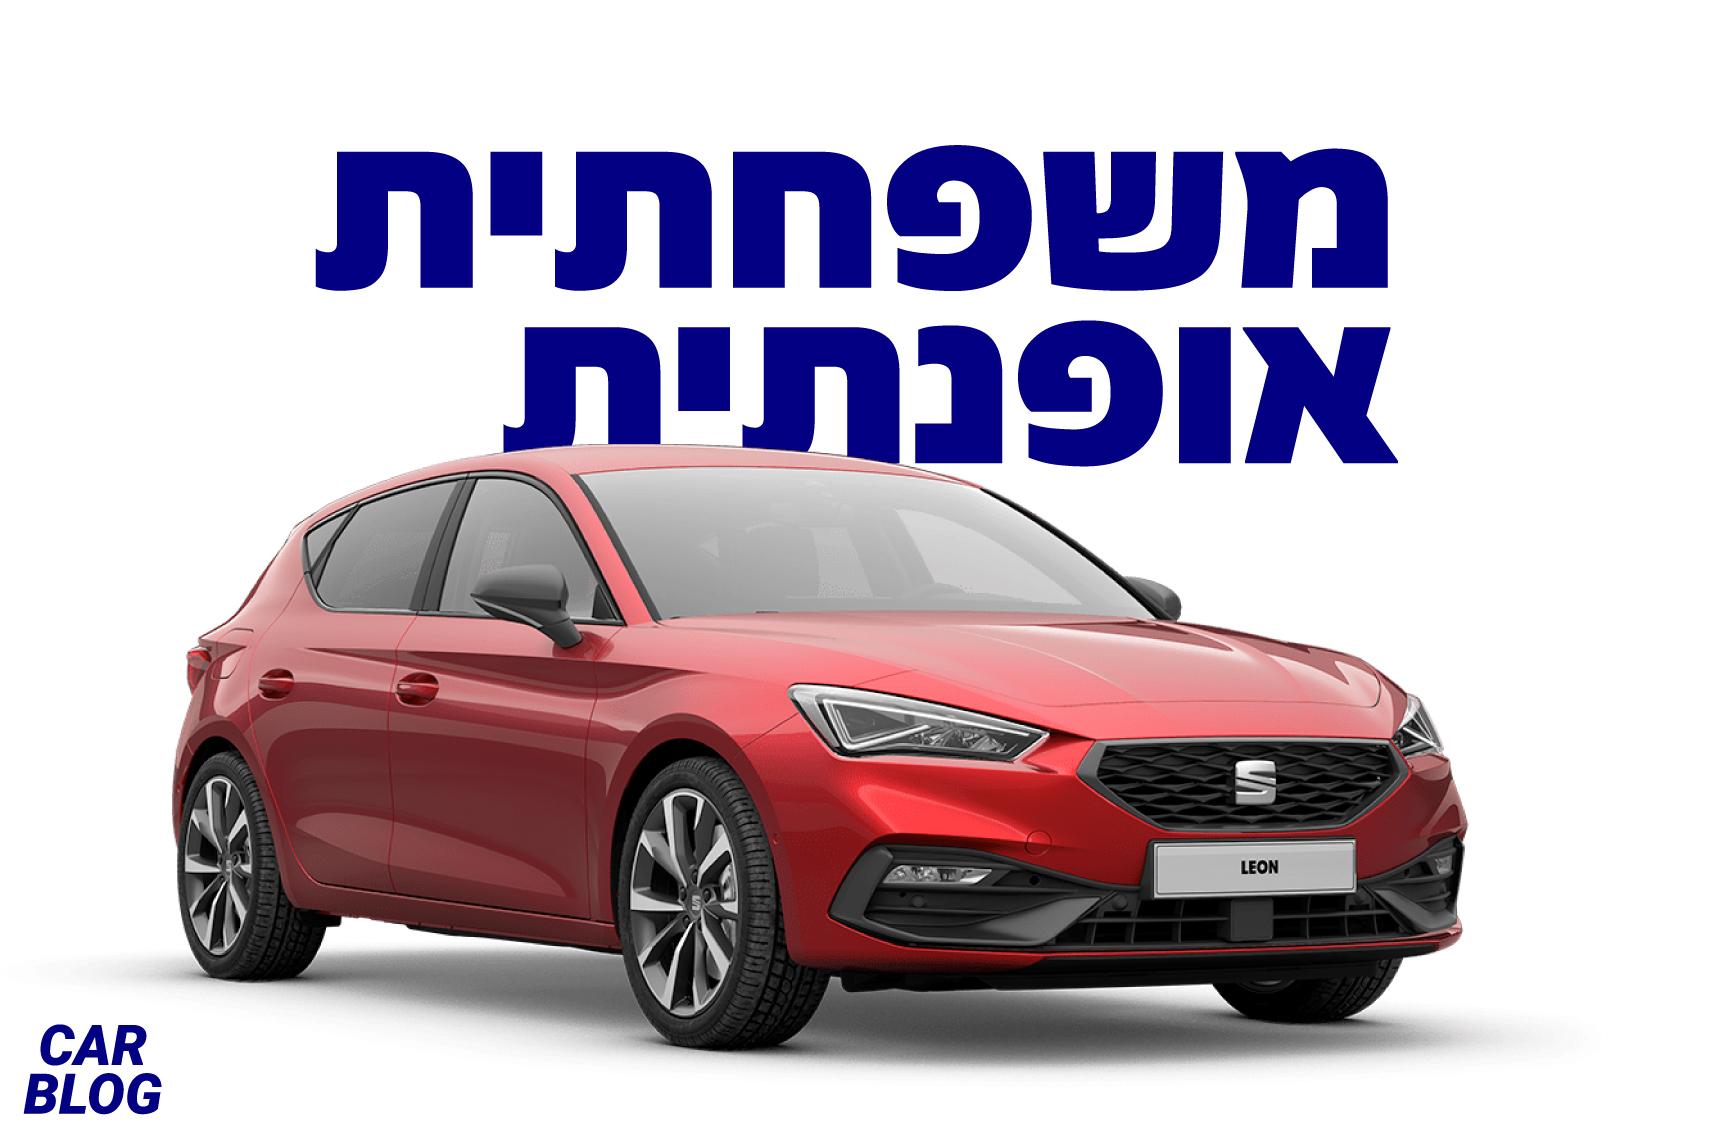 עם יותר מ- 2.2 מיליון כלי רכב מהדורות הקודמים, הדור הרביעי של הלאון הפופולרית של סיאט נוחת בישראל